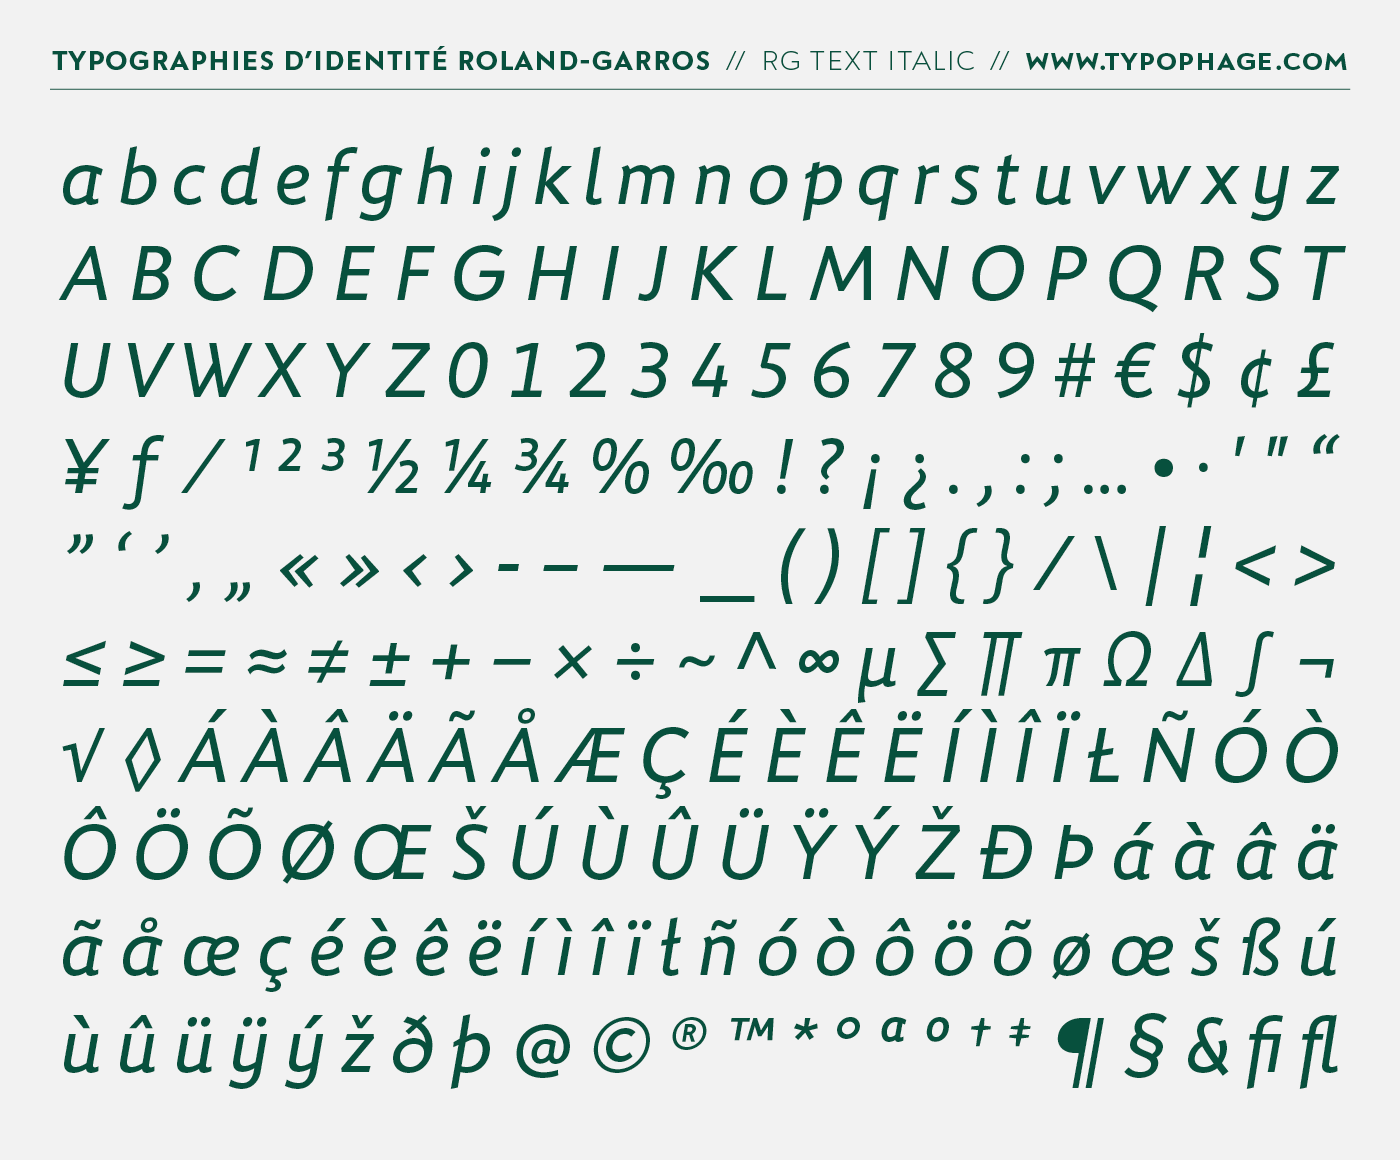 Typographies exclusives pour Roland-Garros par Christophe Badani - www.typophage.com